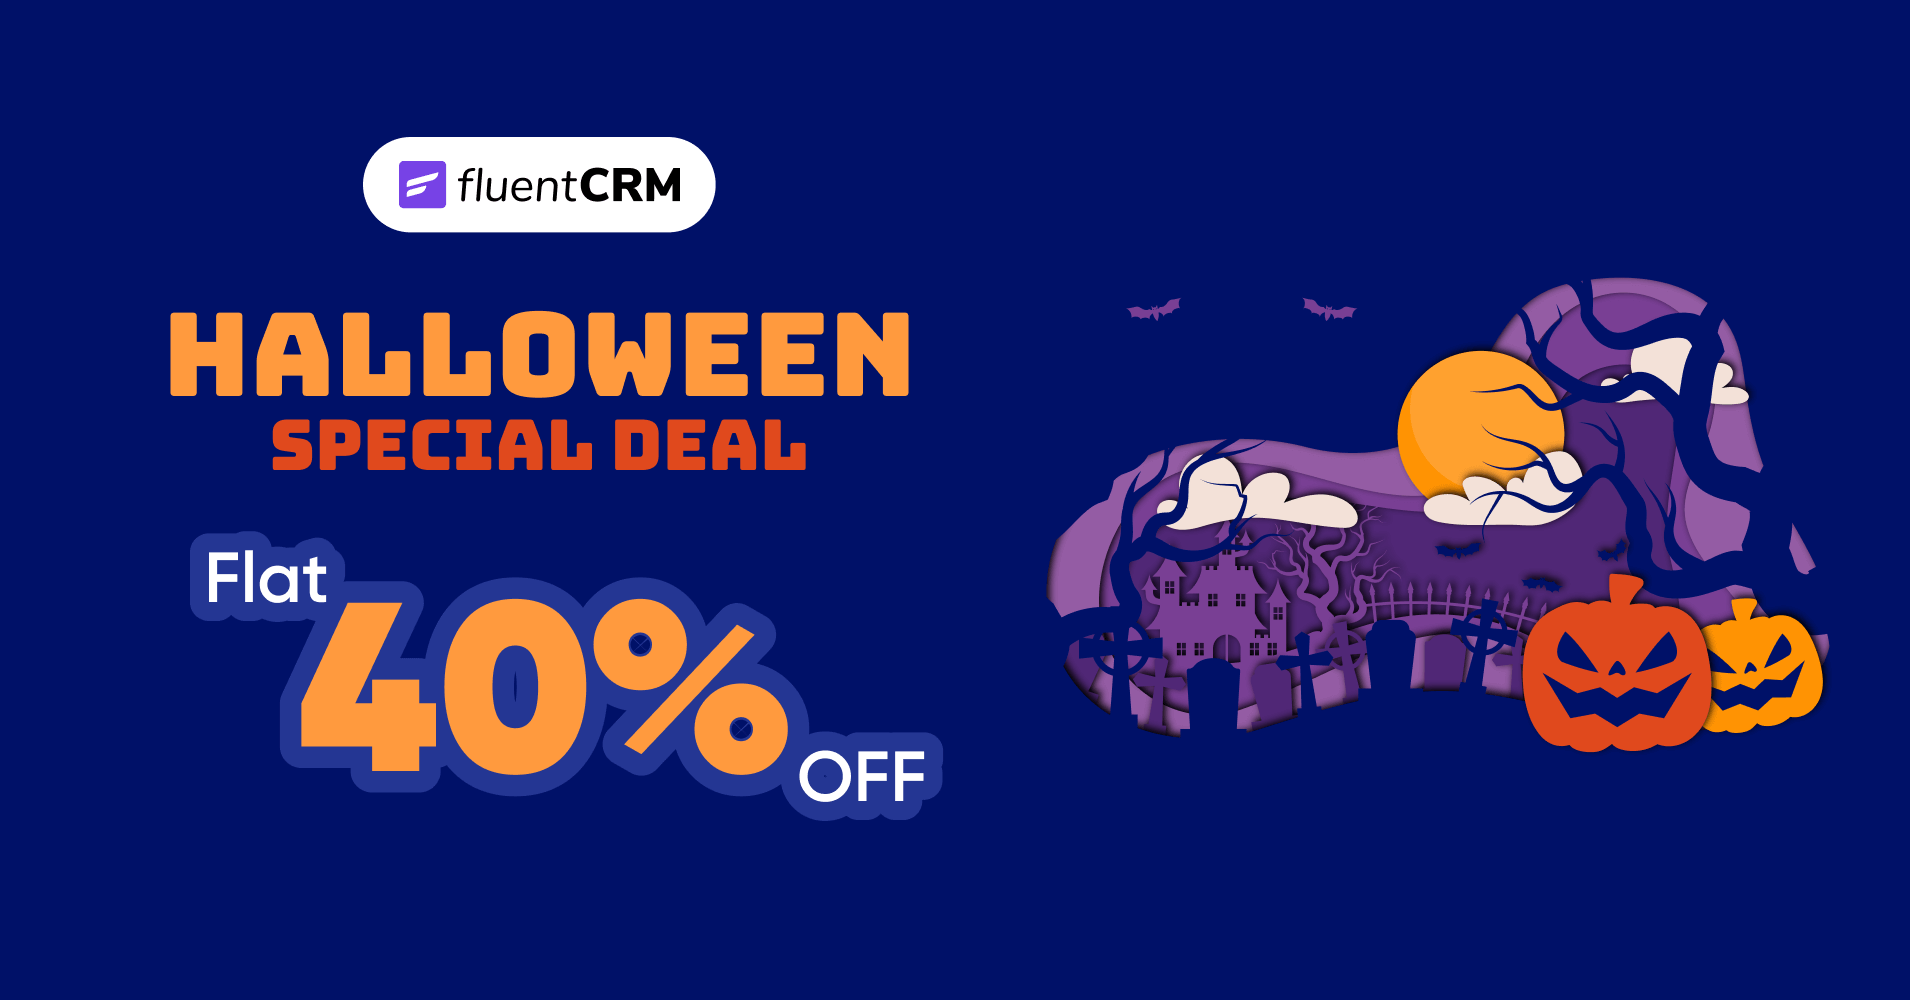 FluentCRM halloween deal